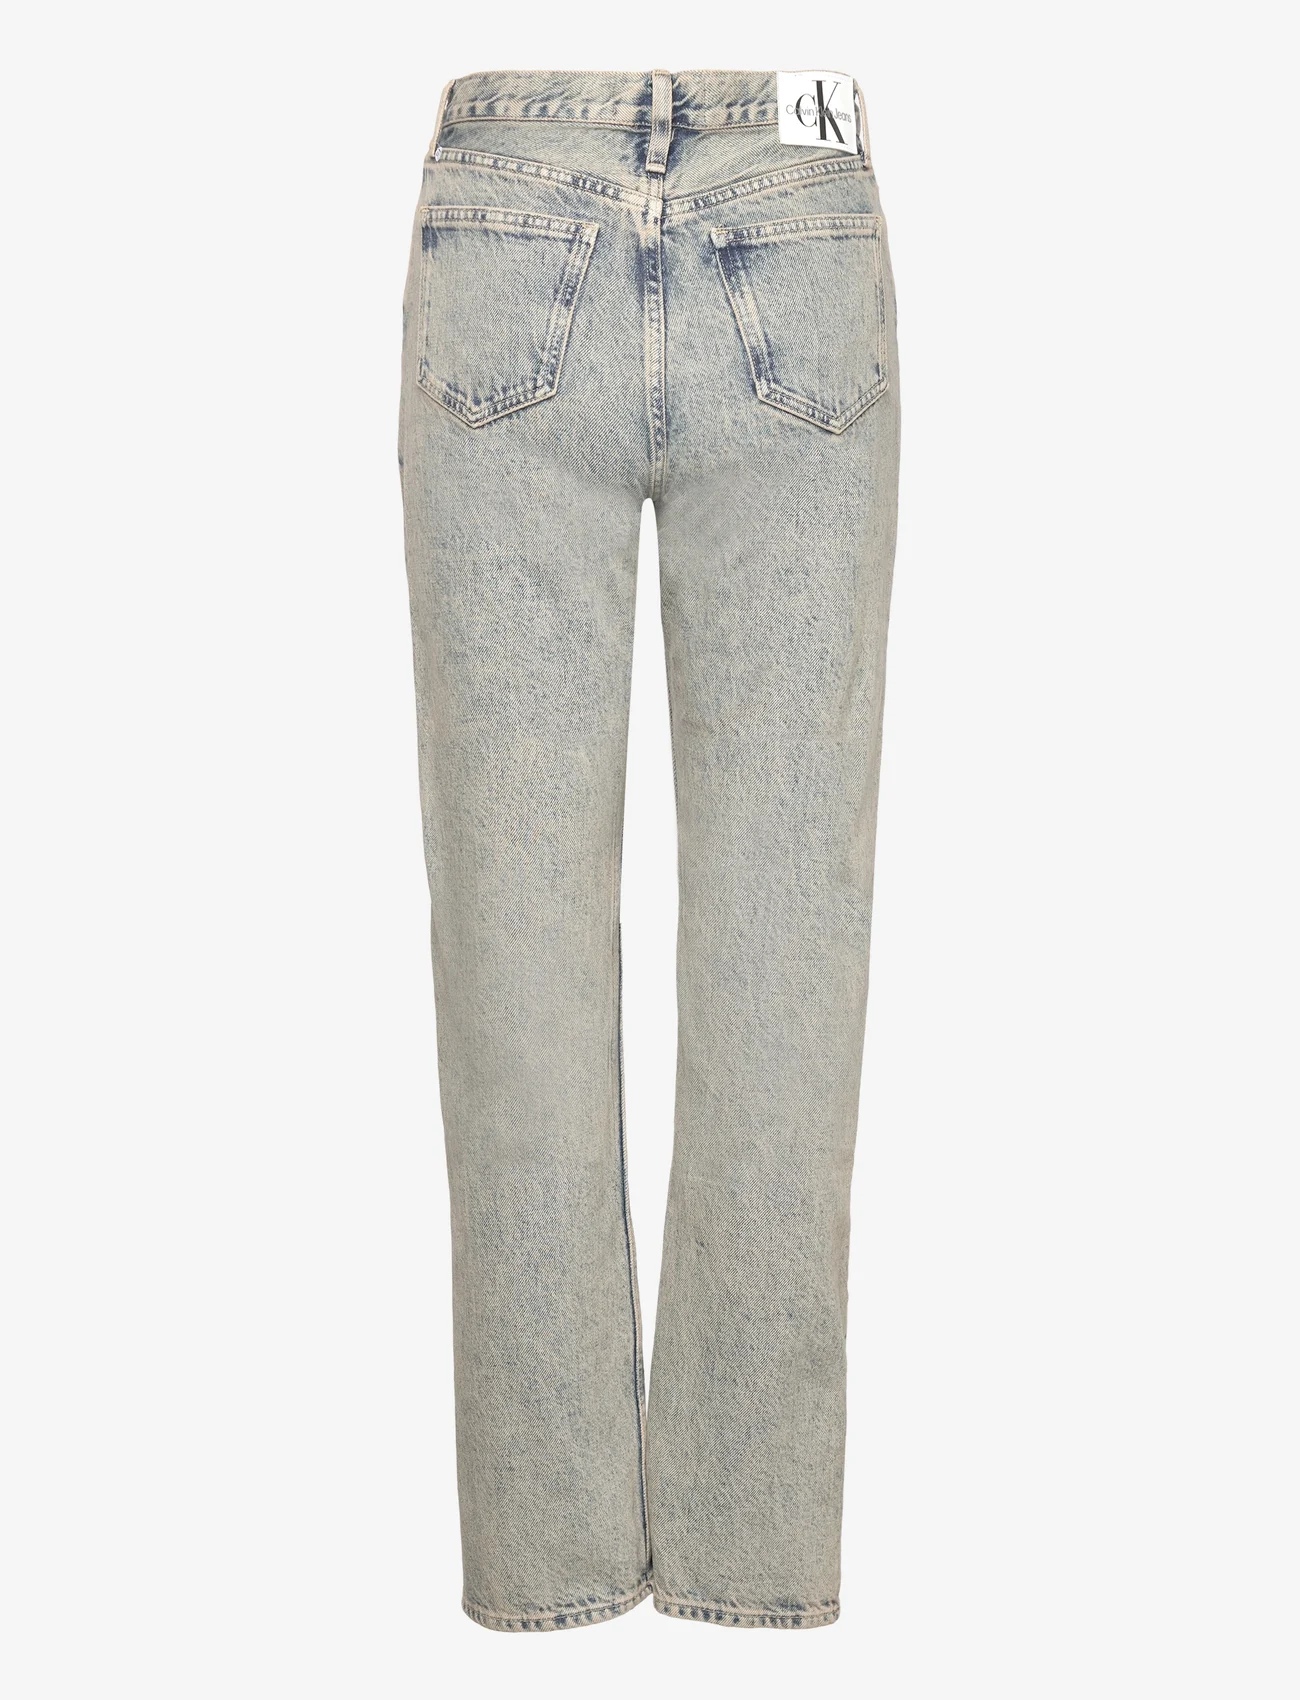 Calvin Klein Jeans - HIGH RISE STRAIGHT - tiesaus kirpimo džinsai - denim medium - 1